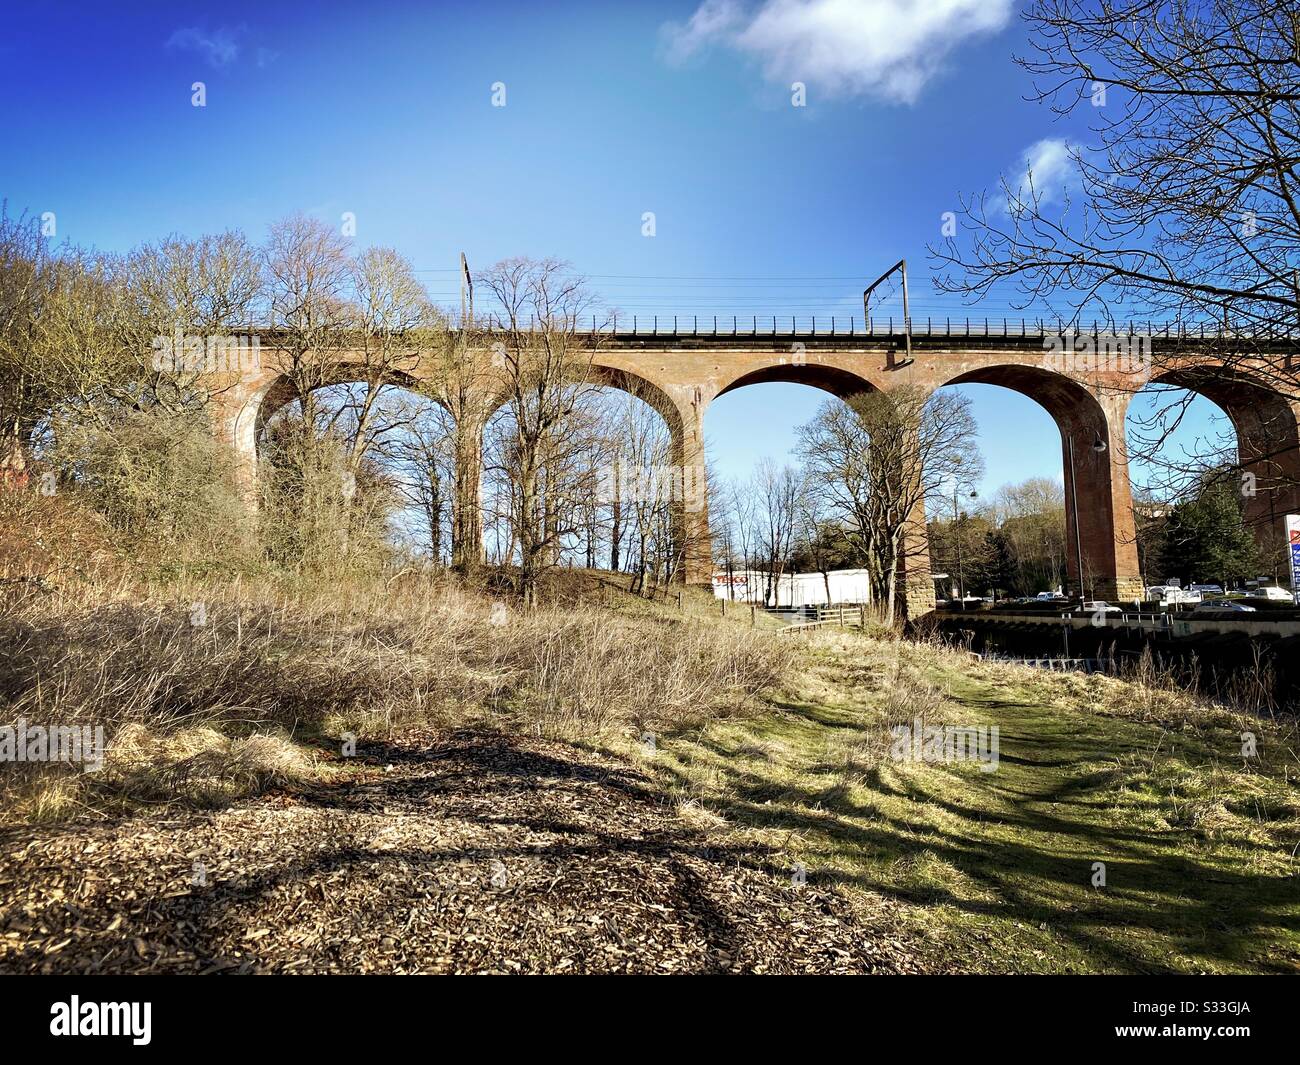 Alti archi rossi formano il viadotto ferroviario Chester Burn con alberi senza foglie durante l'inverno. Imponente architettura ferroviaria del 19th secolo che fa parte della East Coast Mainline Foto Stock